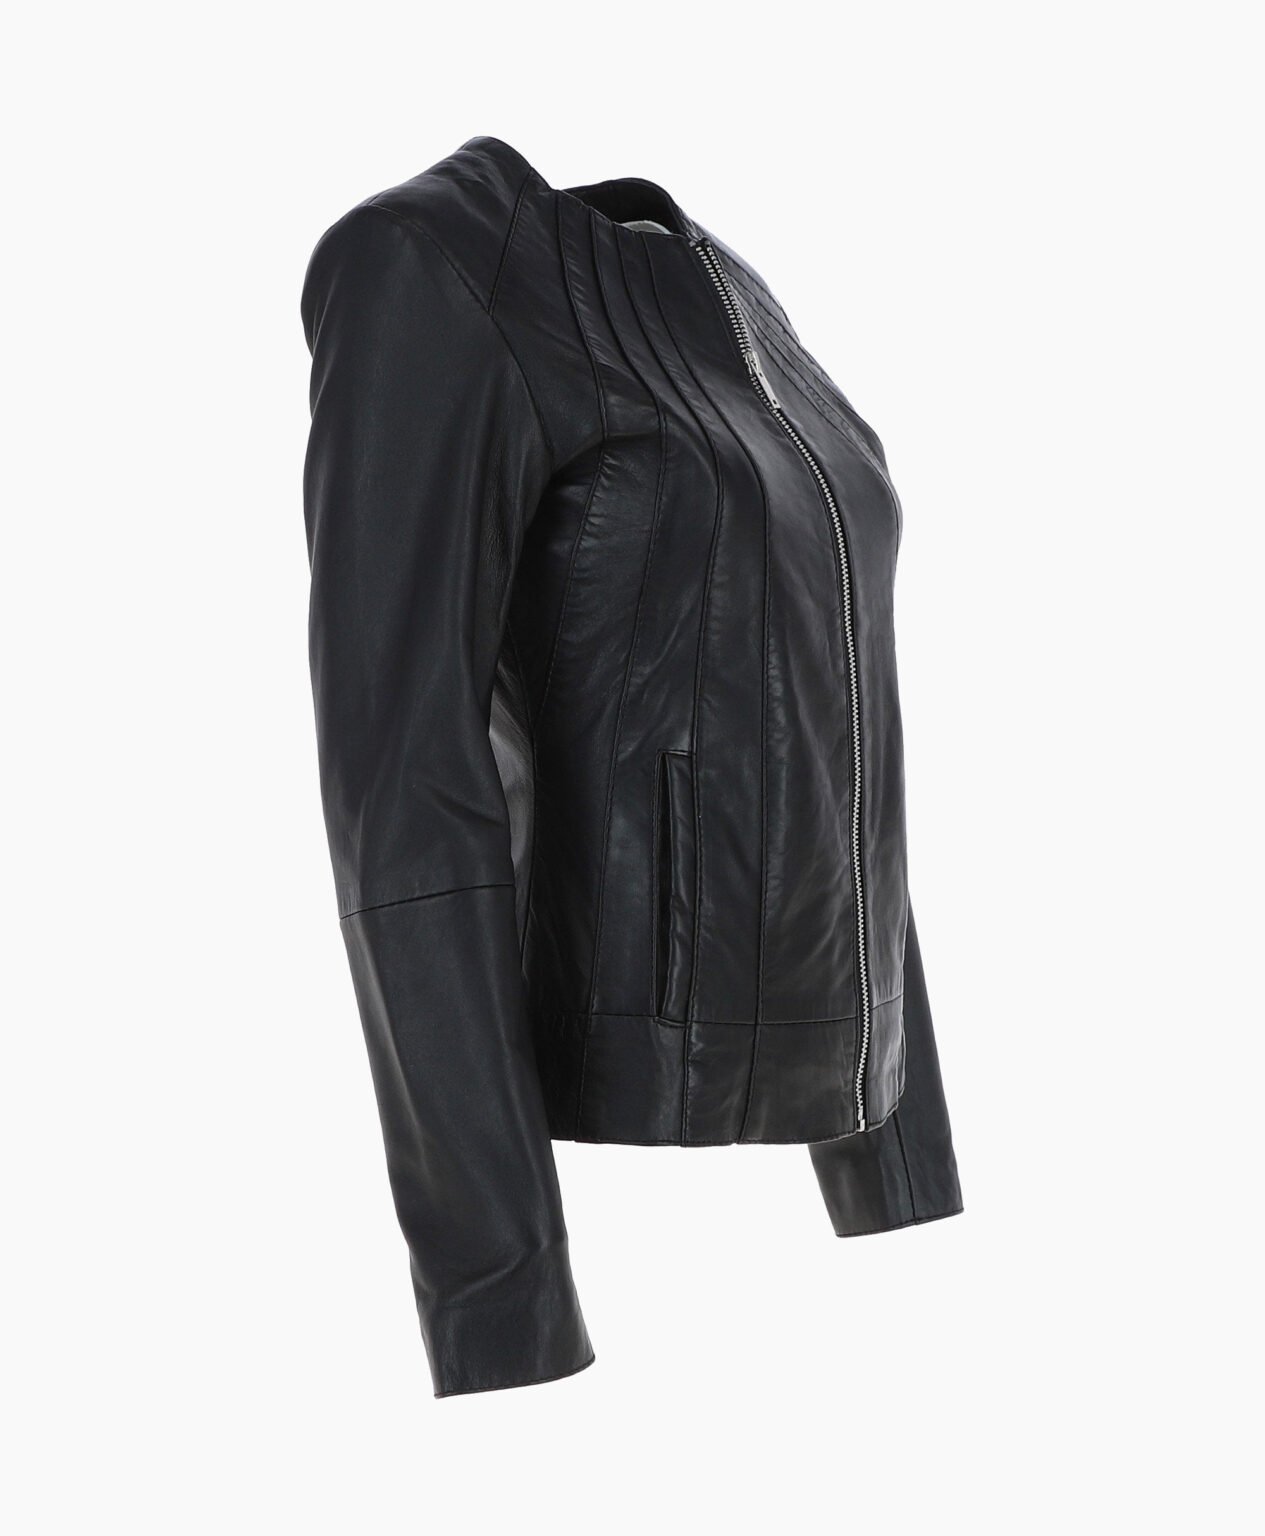 vogue-jacket-leather-jacket-black-cordova-image-203